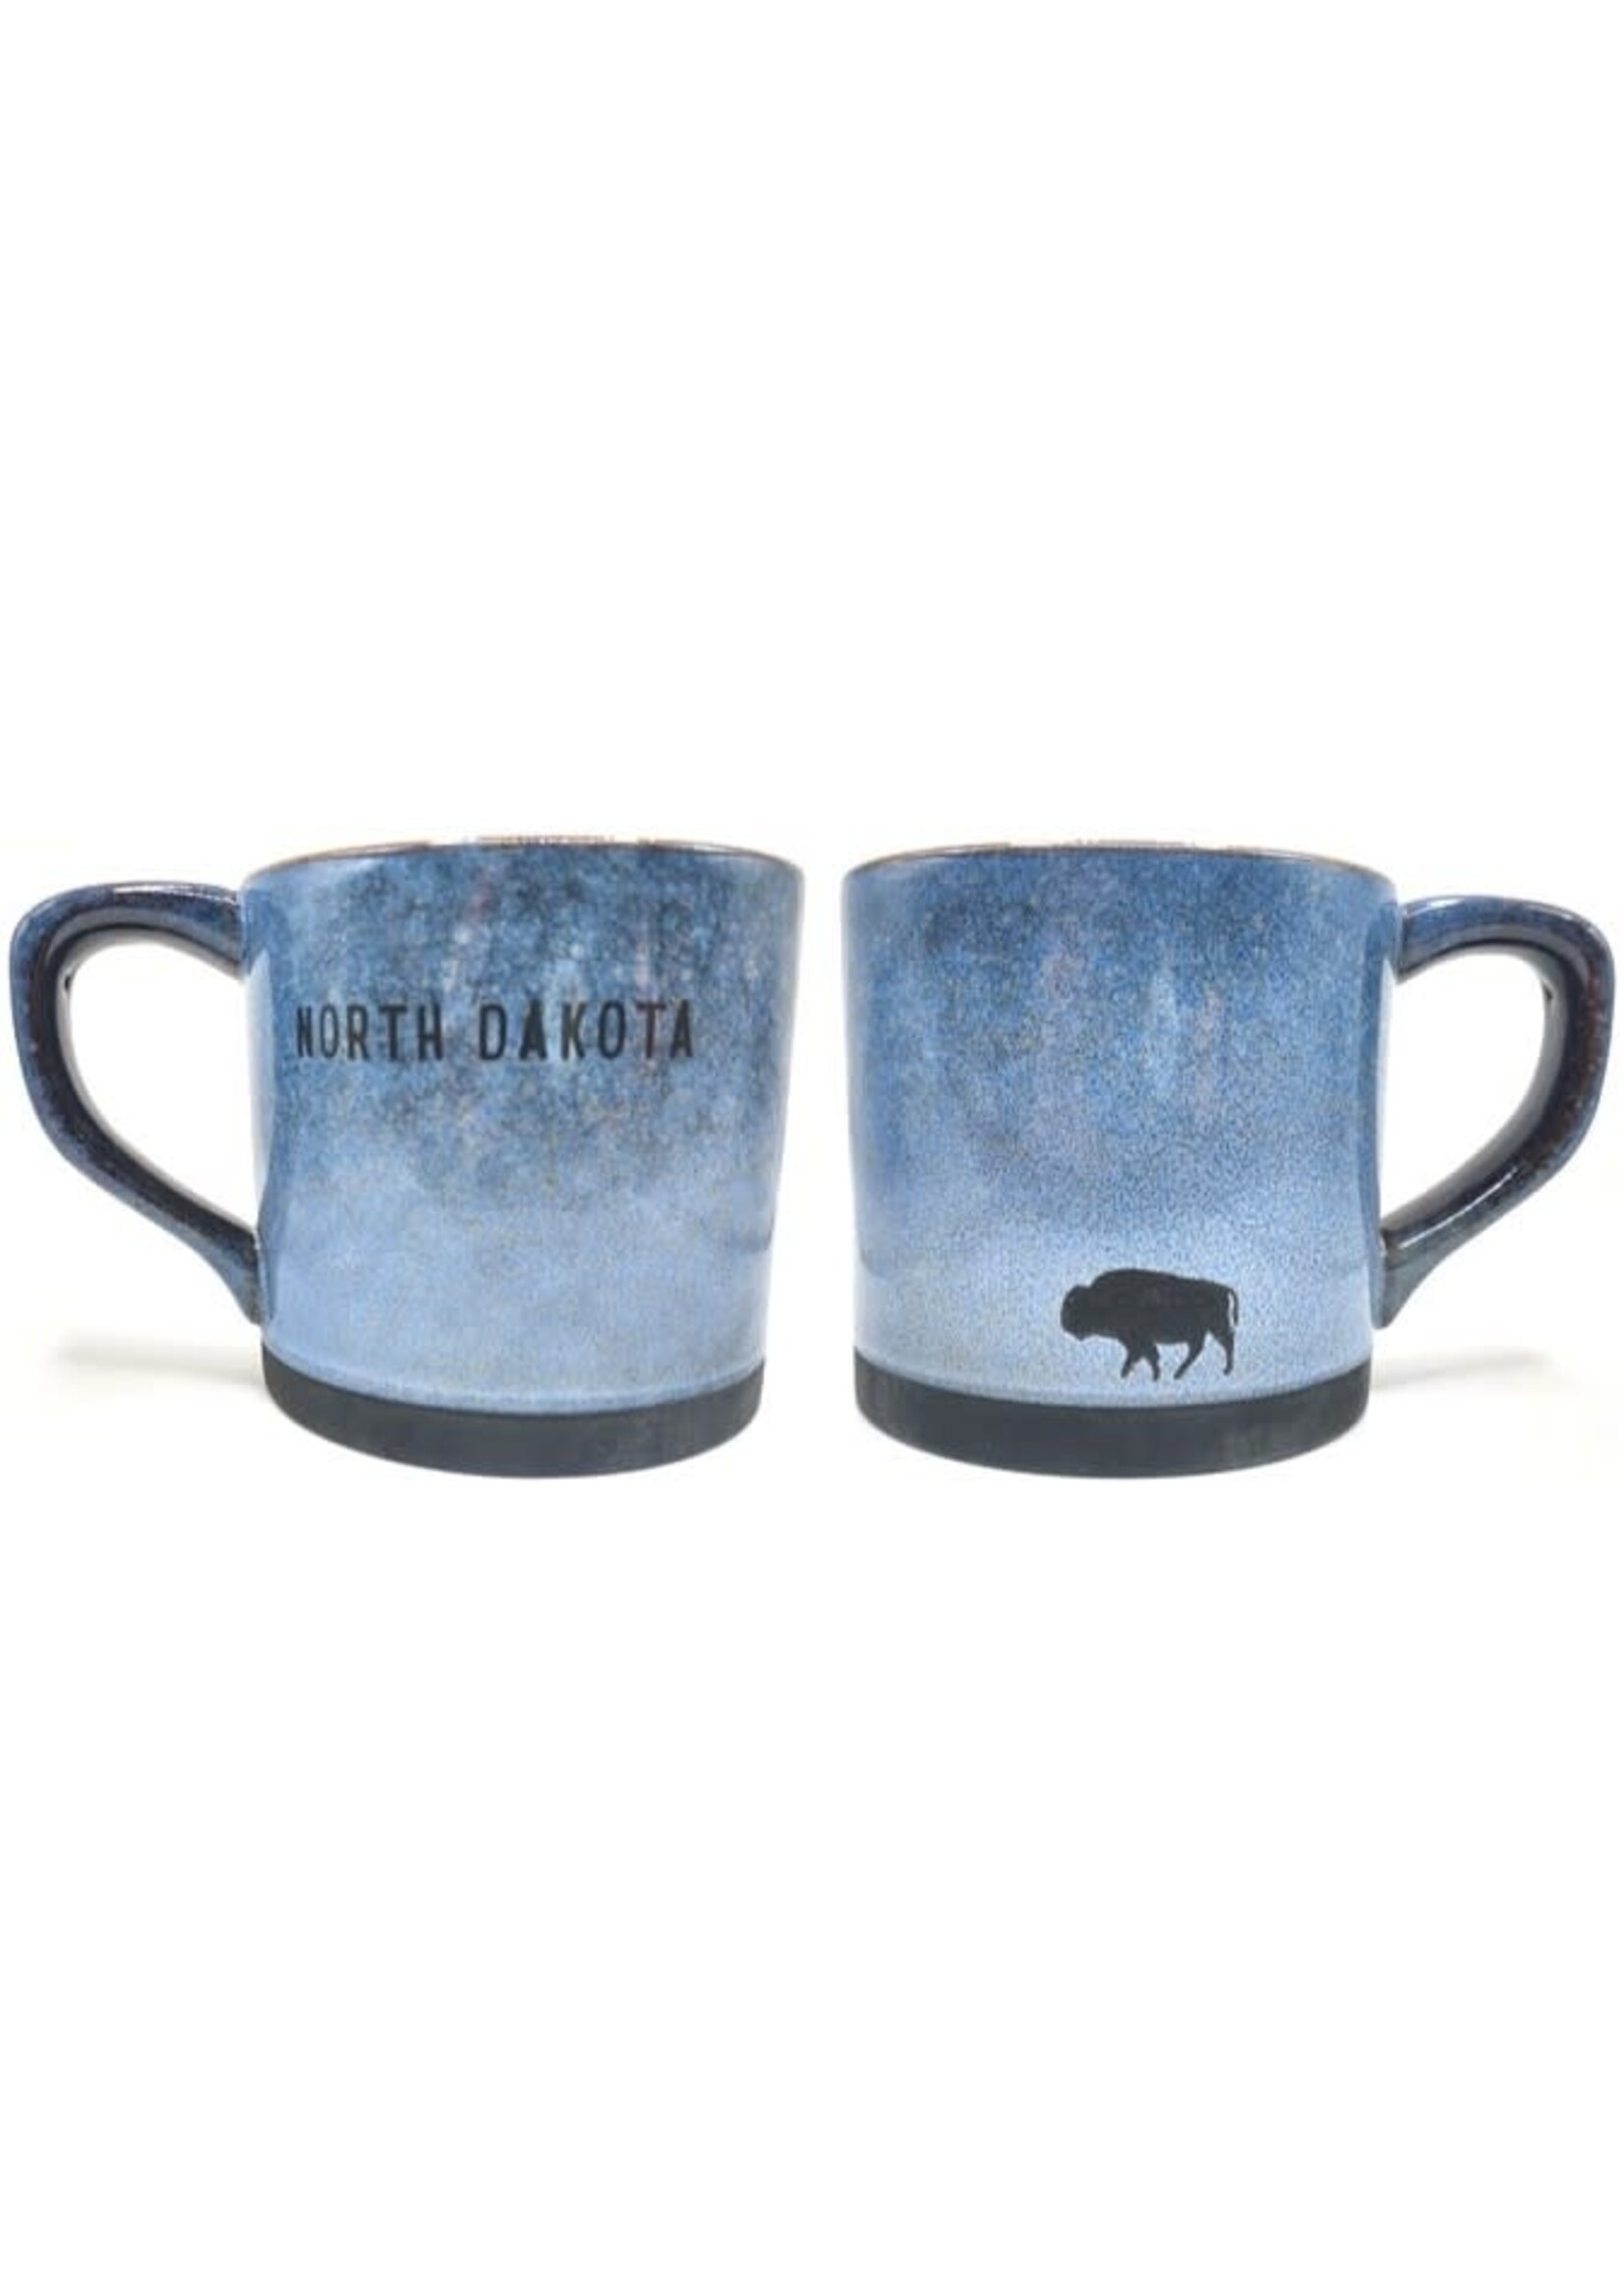 North Dakota Buffalo Nature Pottery Mug